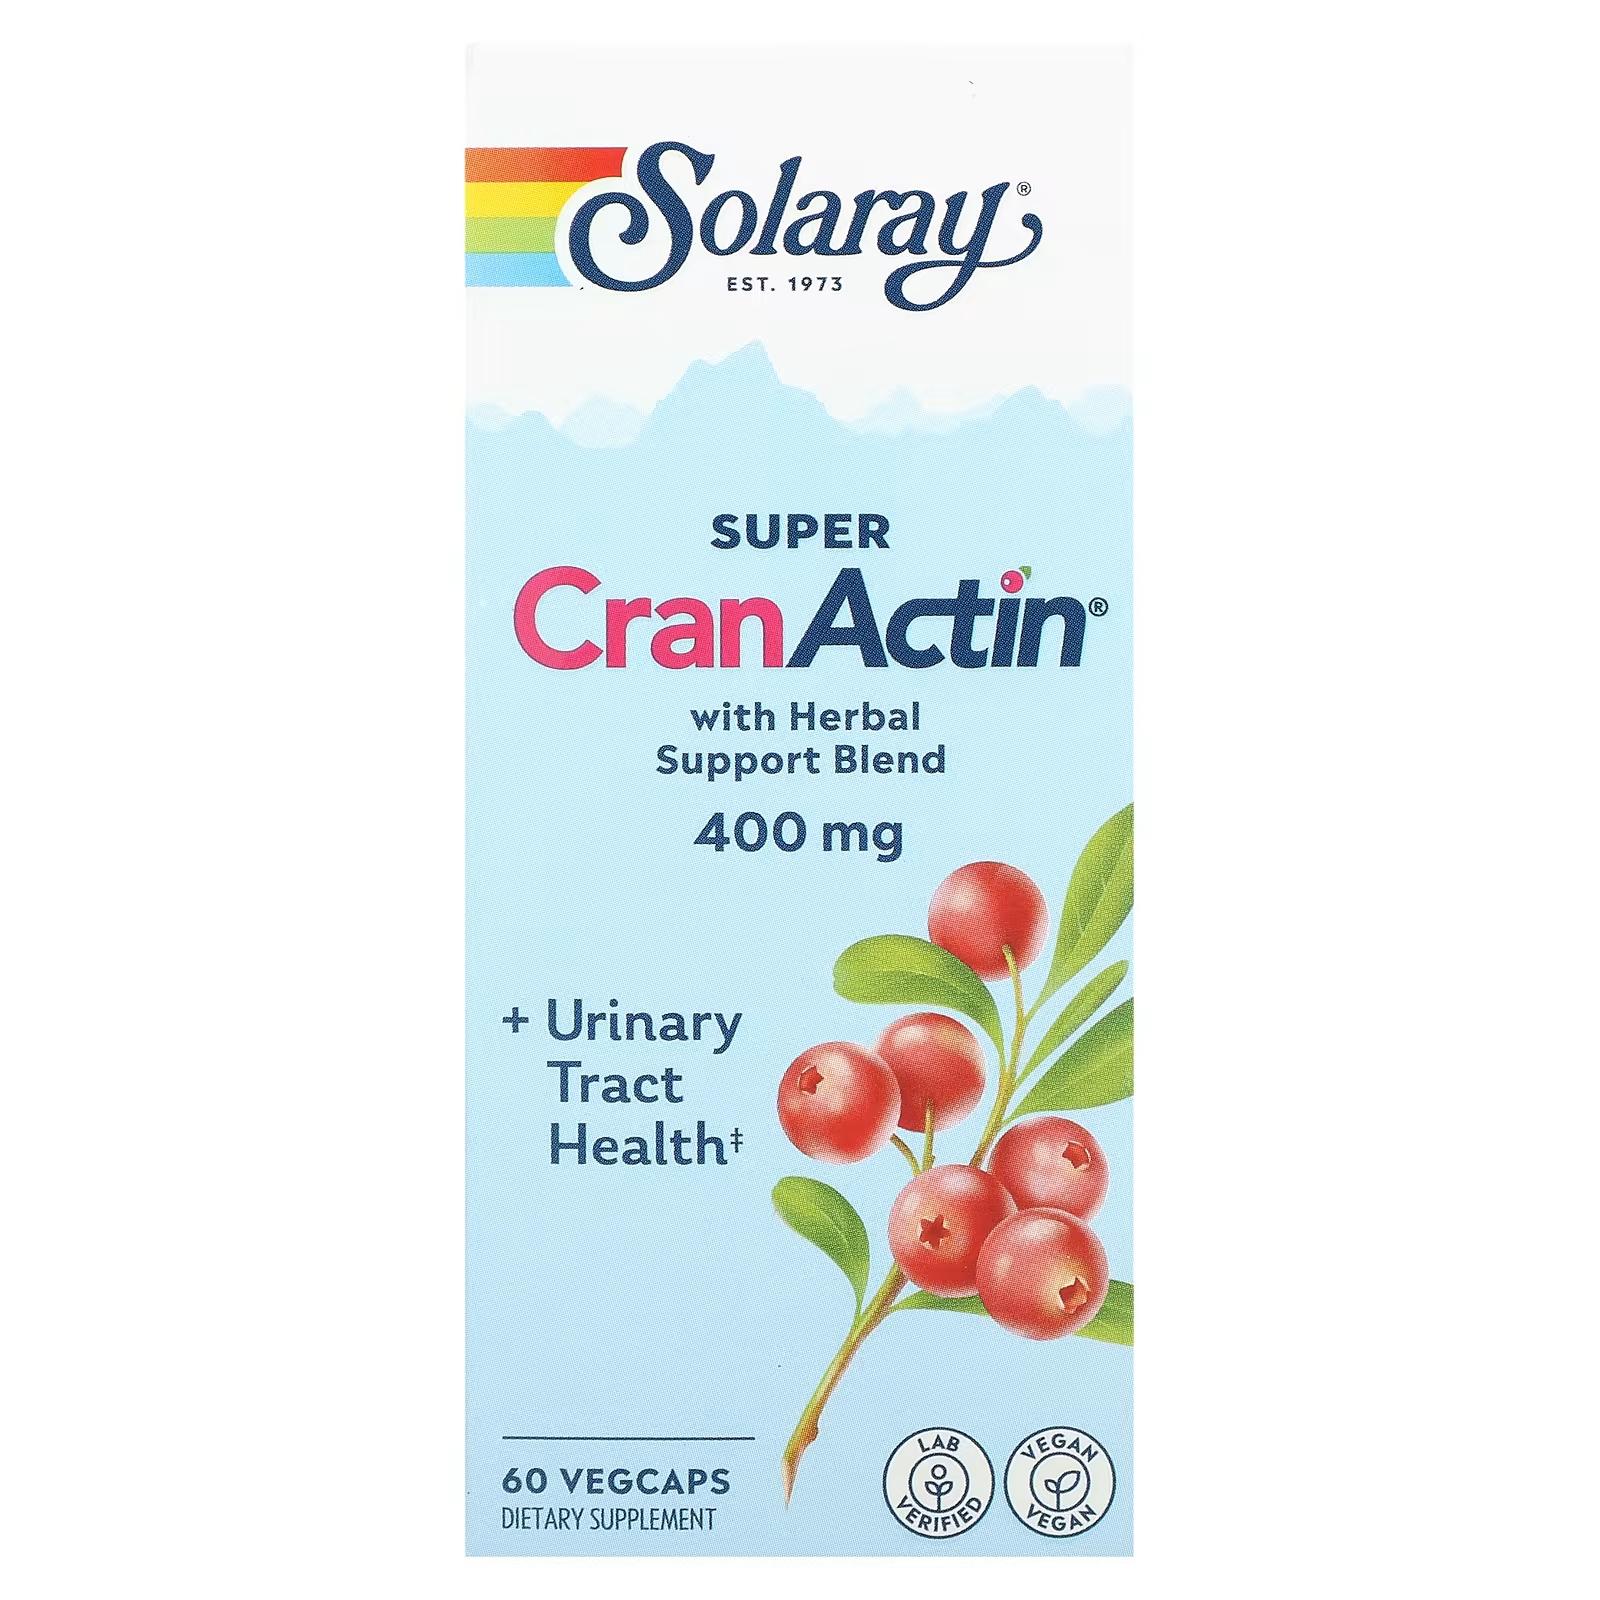 Solaray Super CranActin со смесью травяной поддержки 400 мг 60 растительных капсул